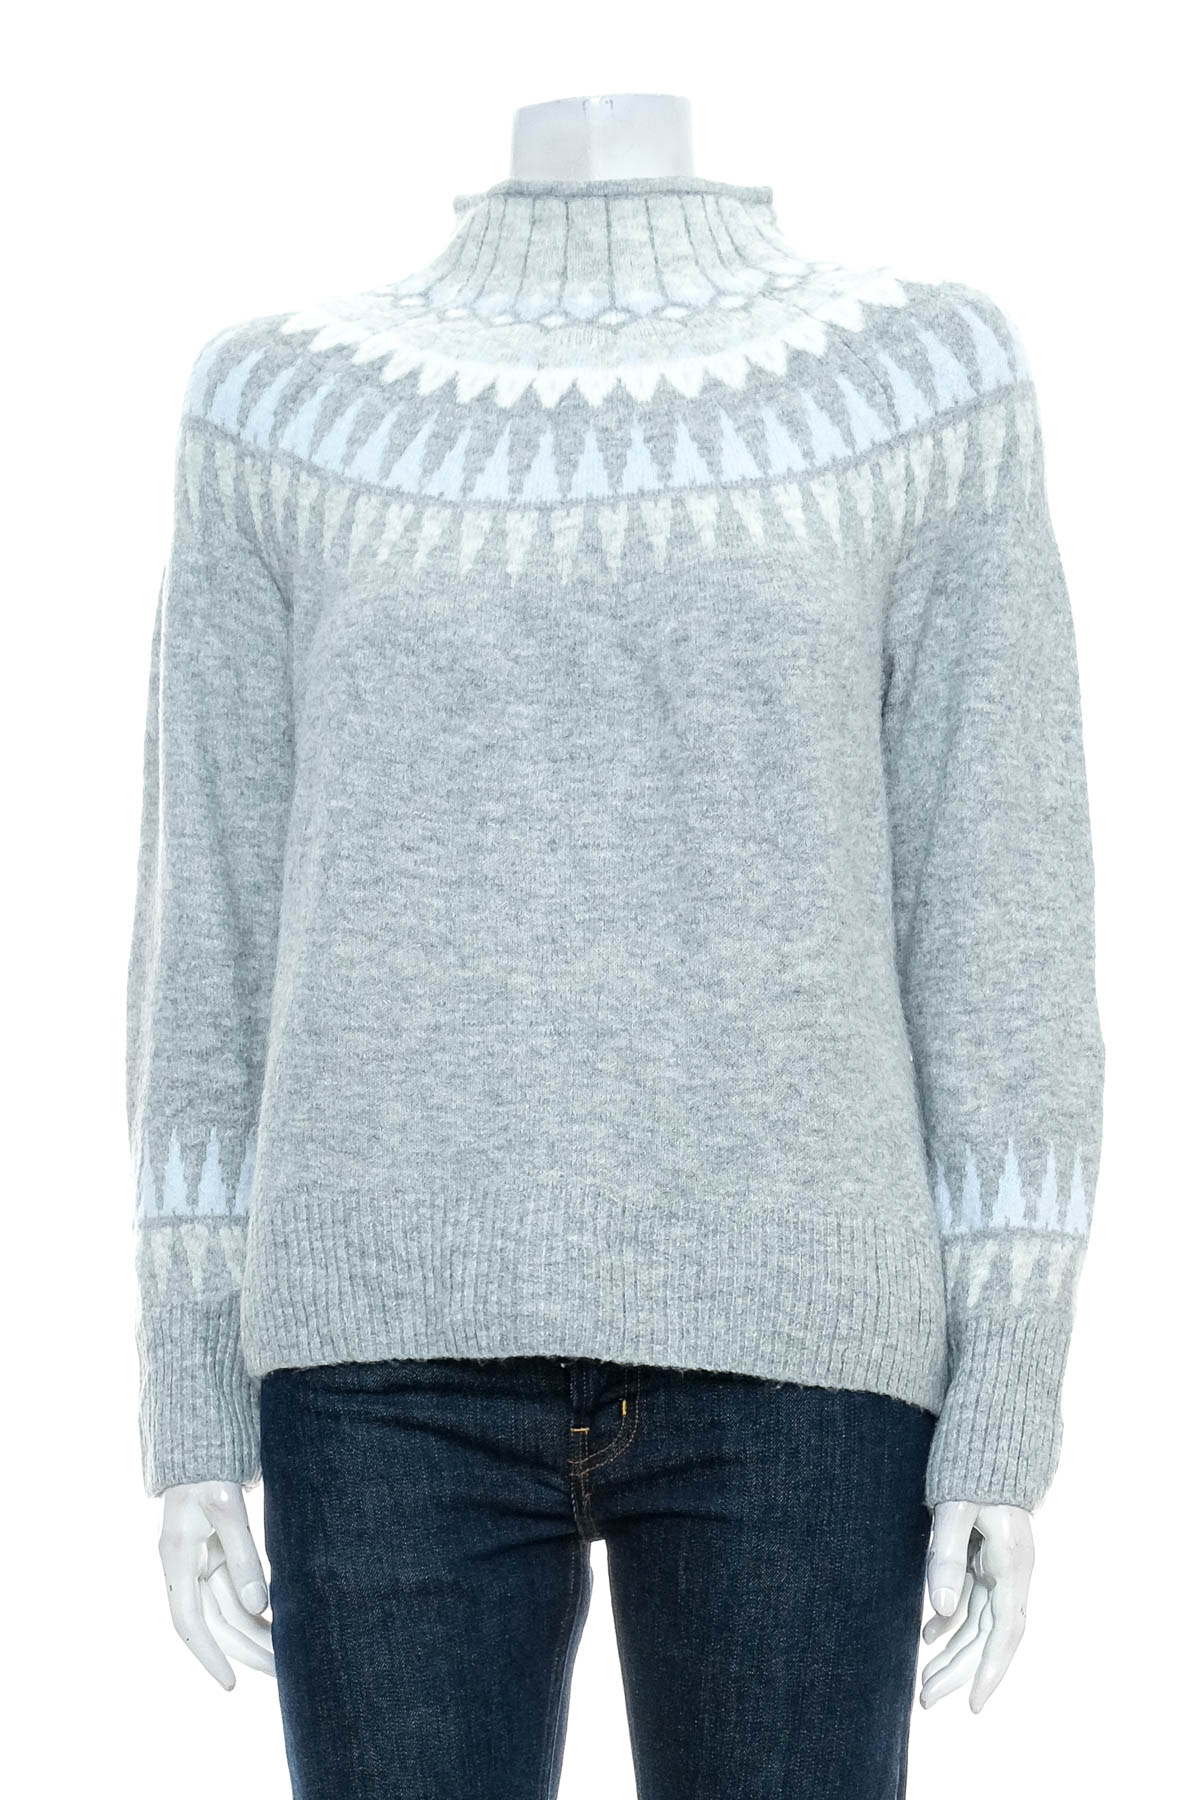 Women's sweater - CECE - 0